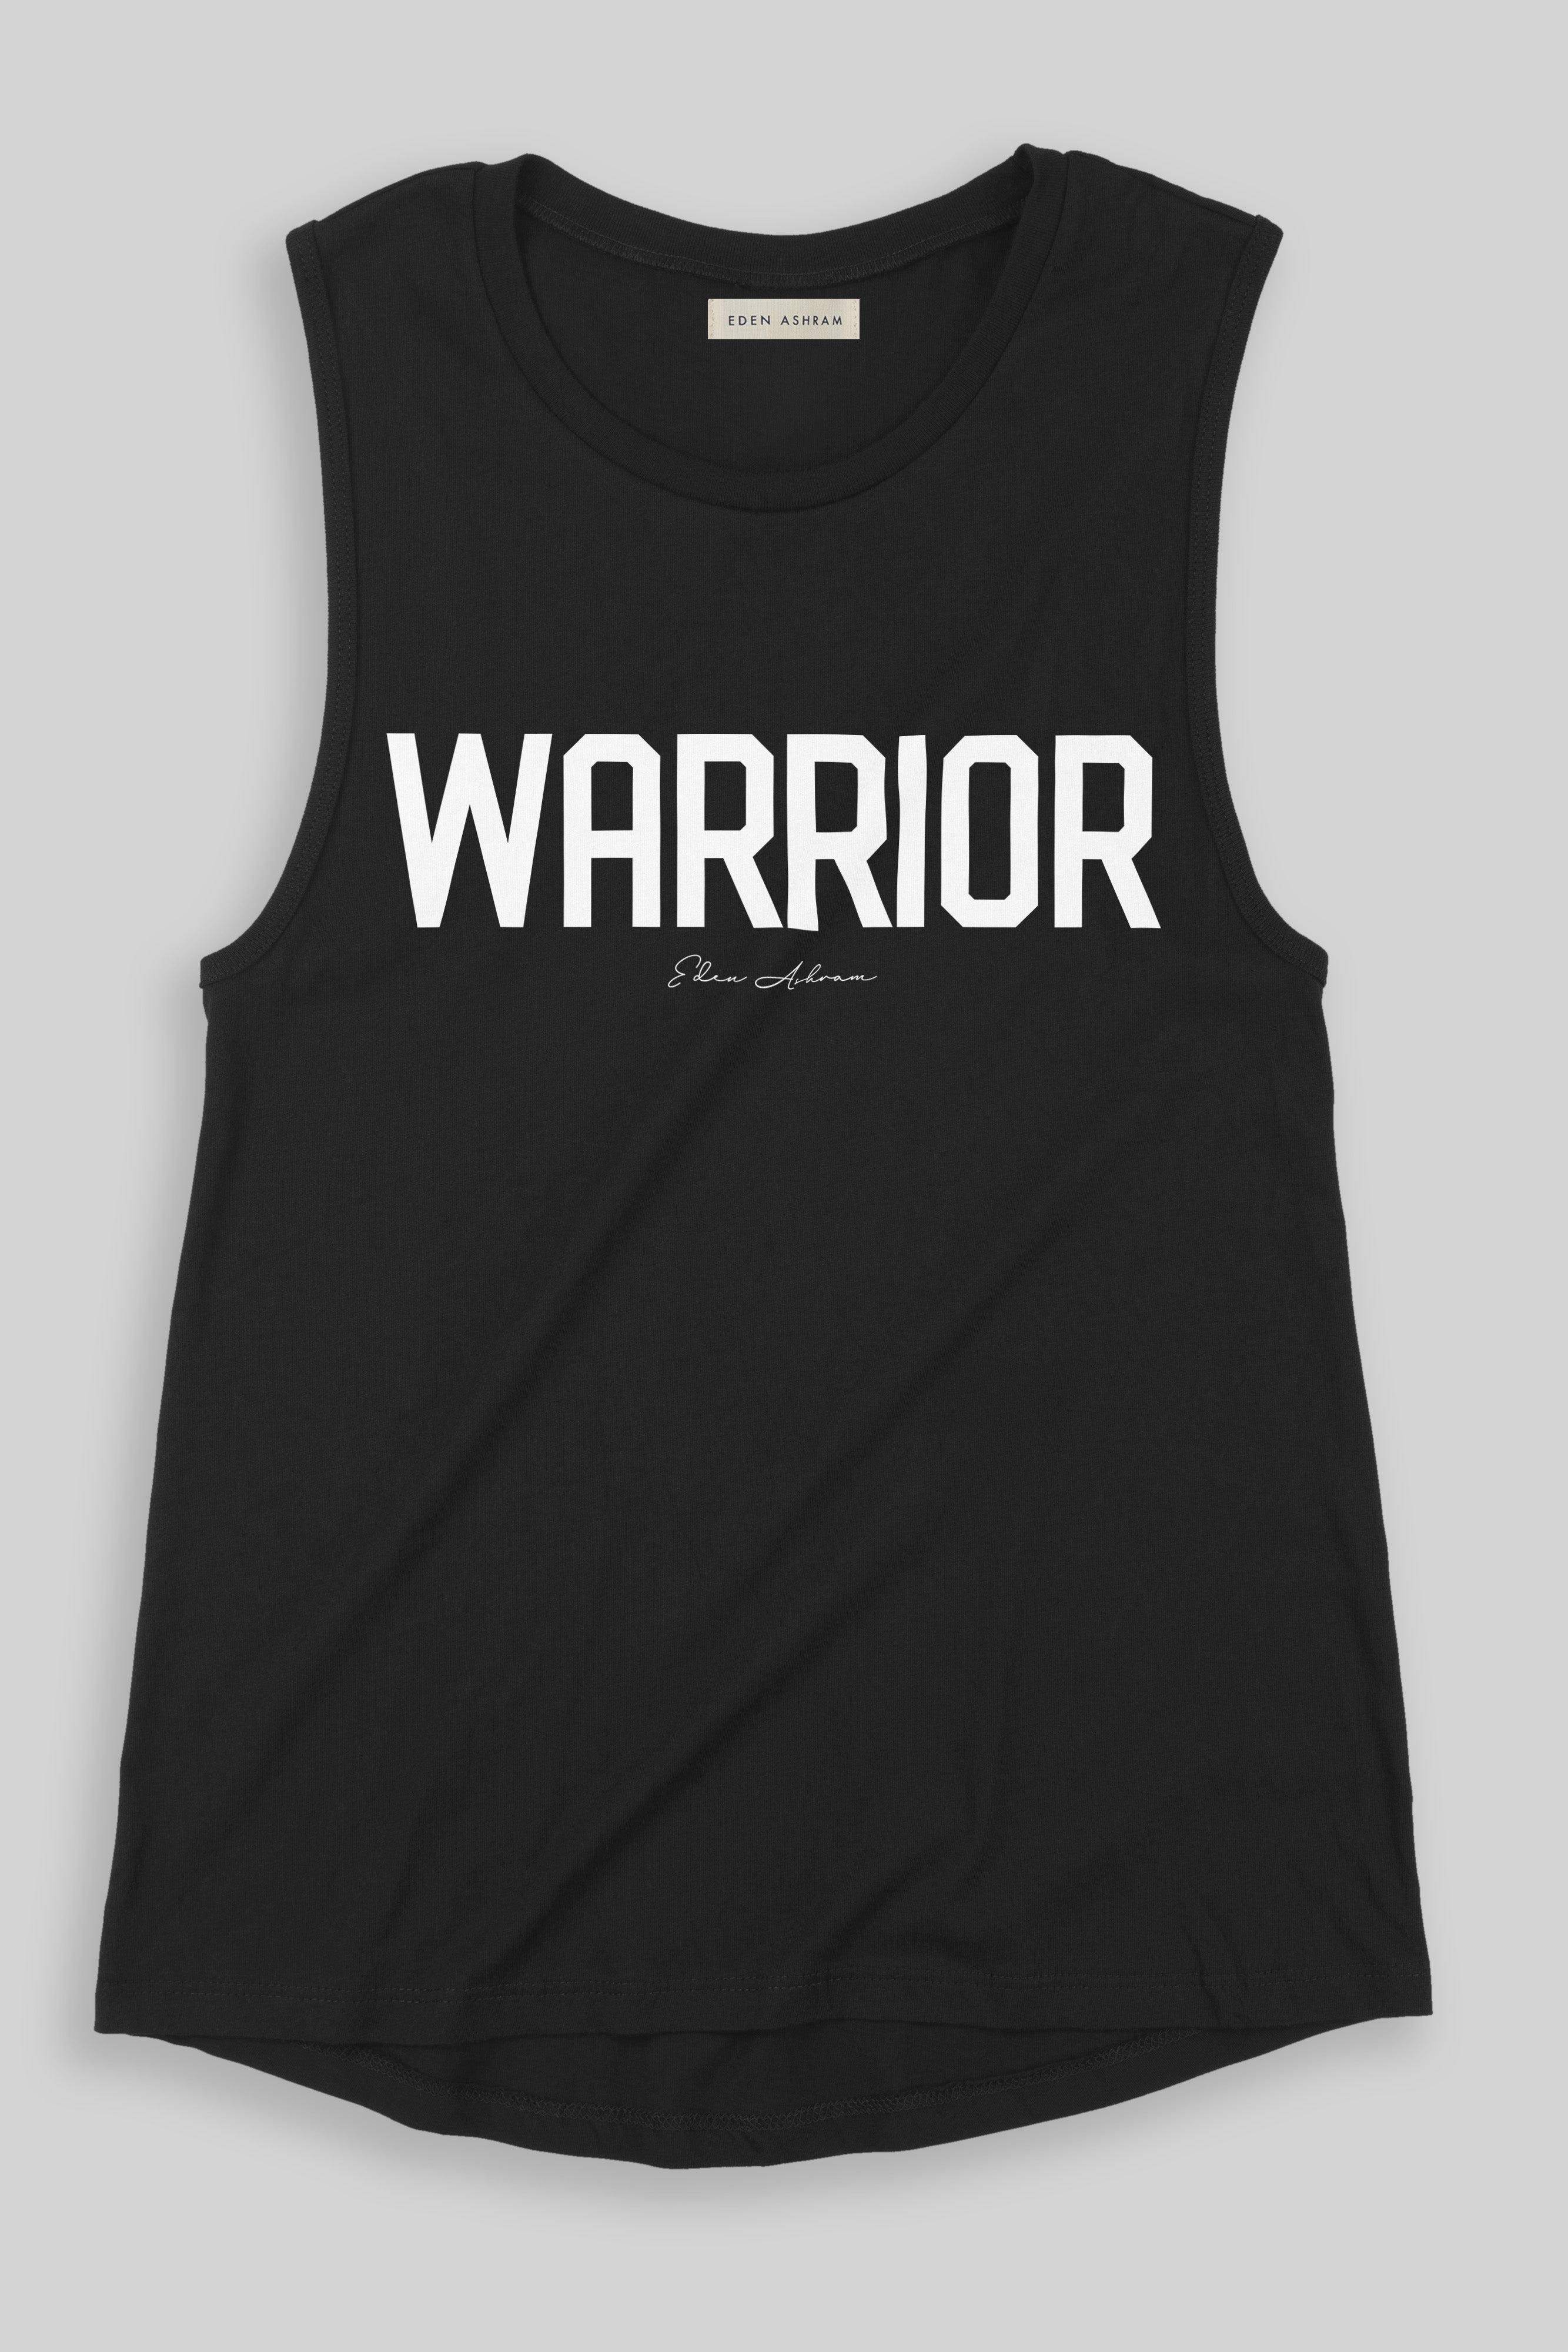 EDEN ASHRAM Warrior Premium Jersey Muscle Tank Black